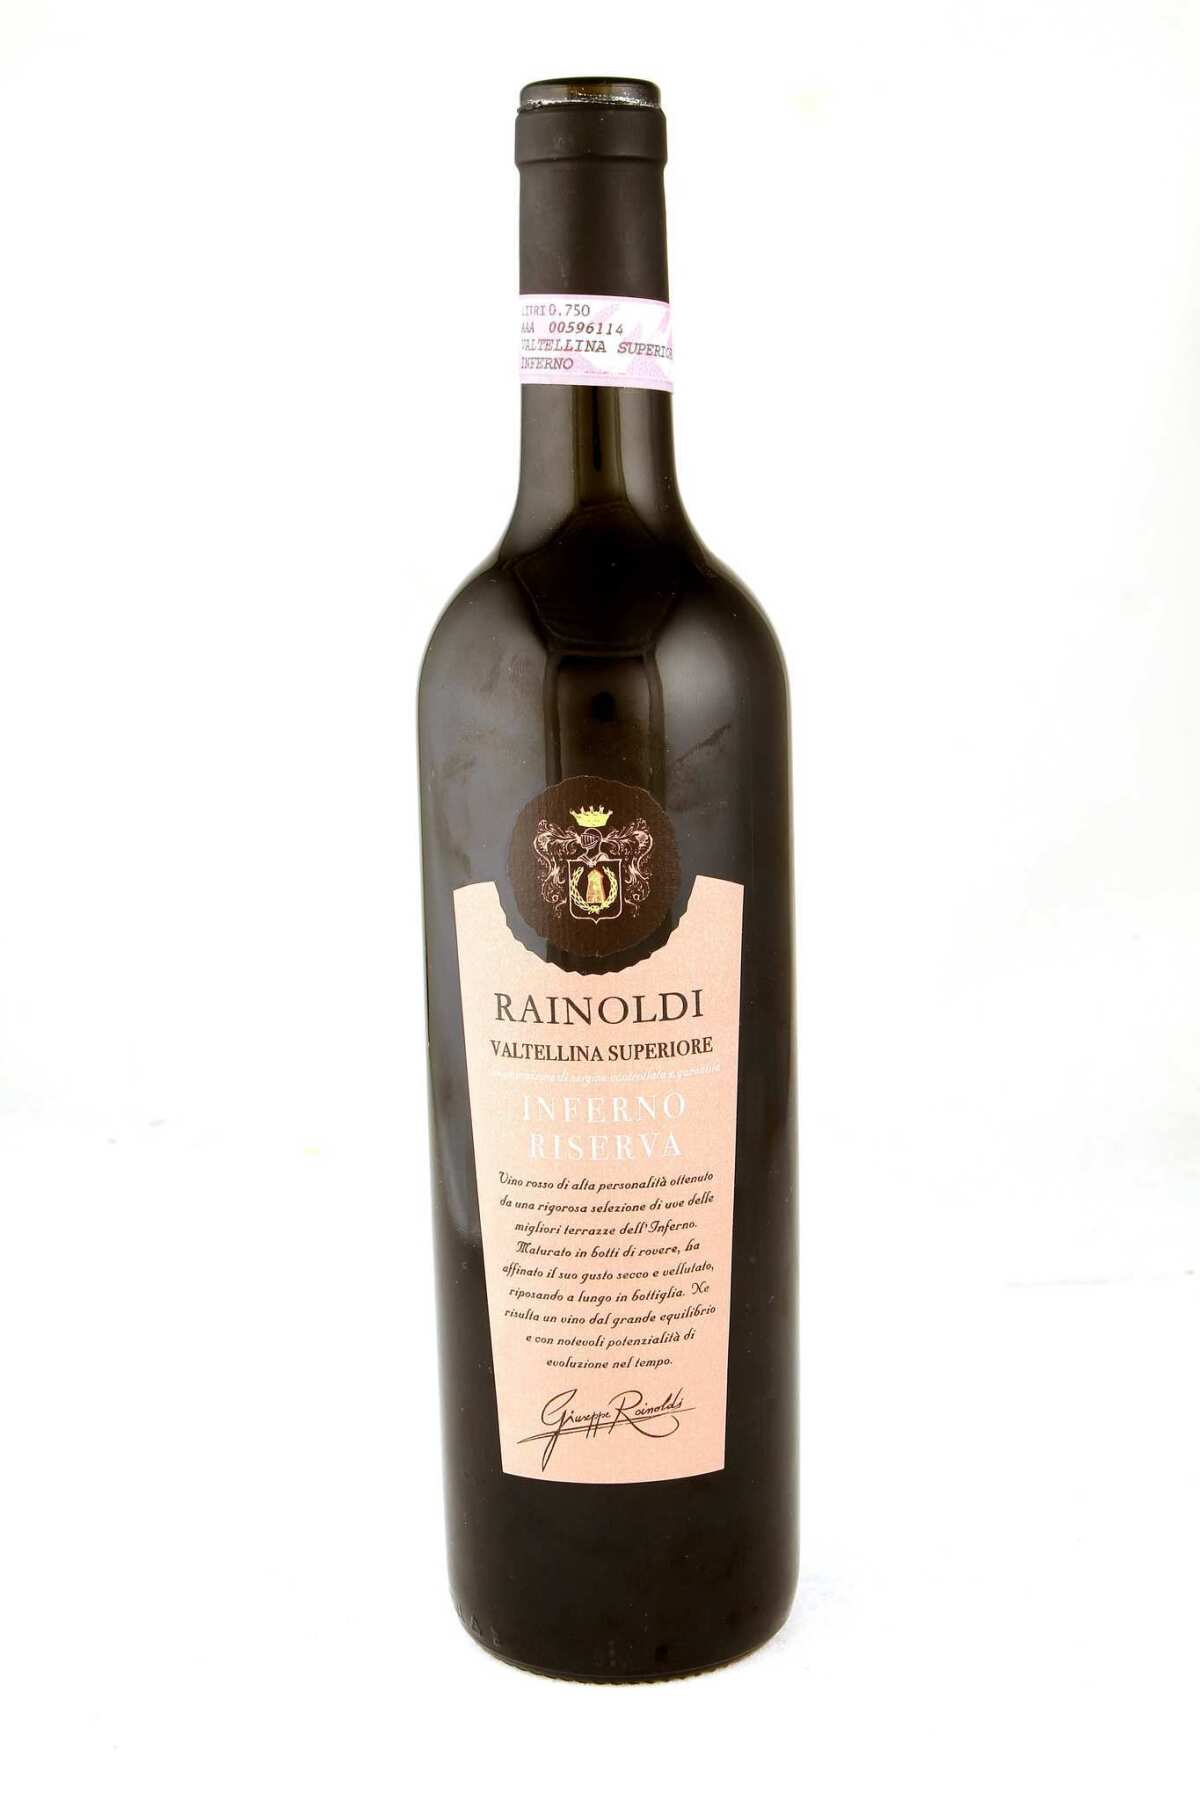 Rainoldi's Valtellina Superiore, Inferno Riserva, a dry Italian red wine with a 2007 vintage.